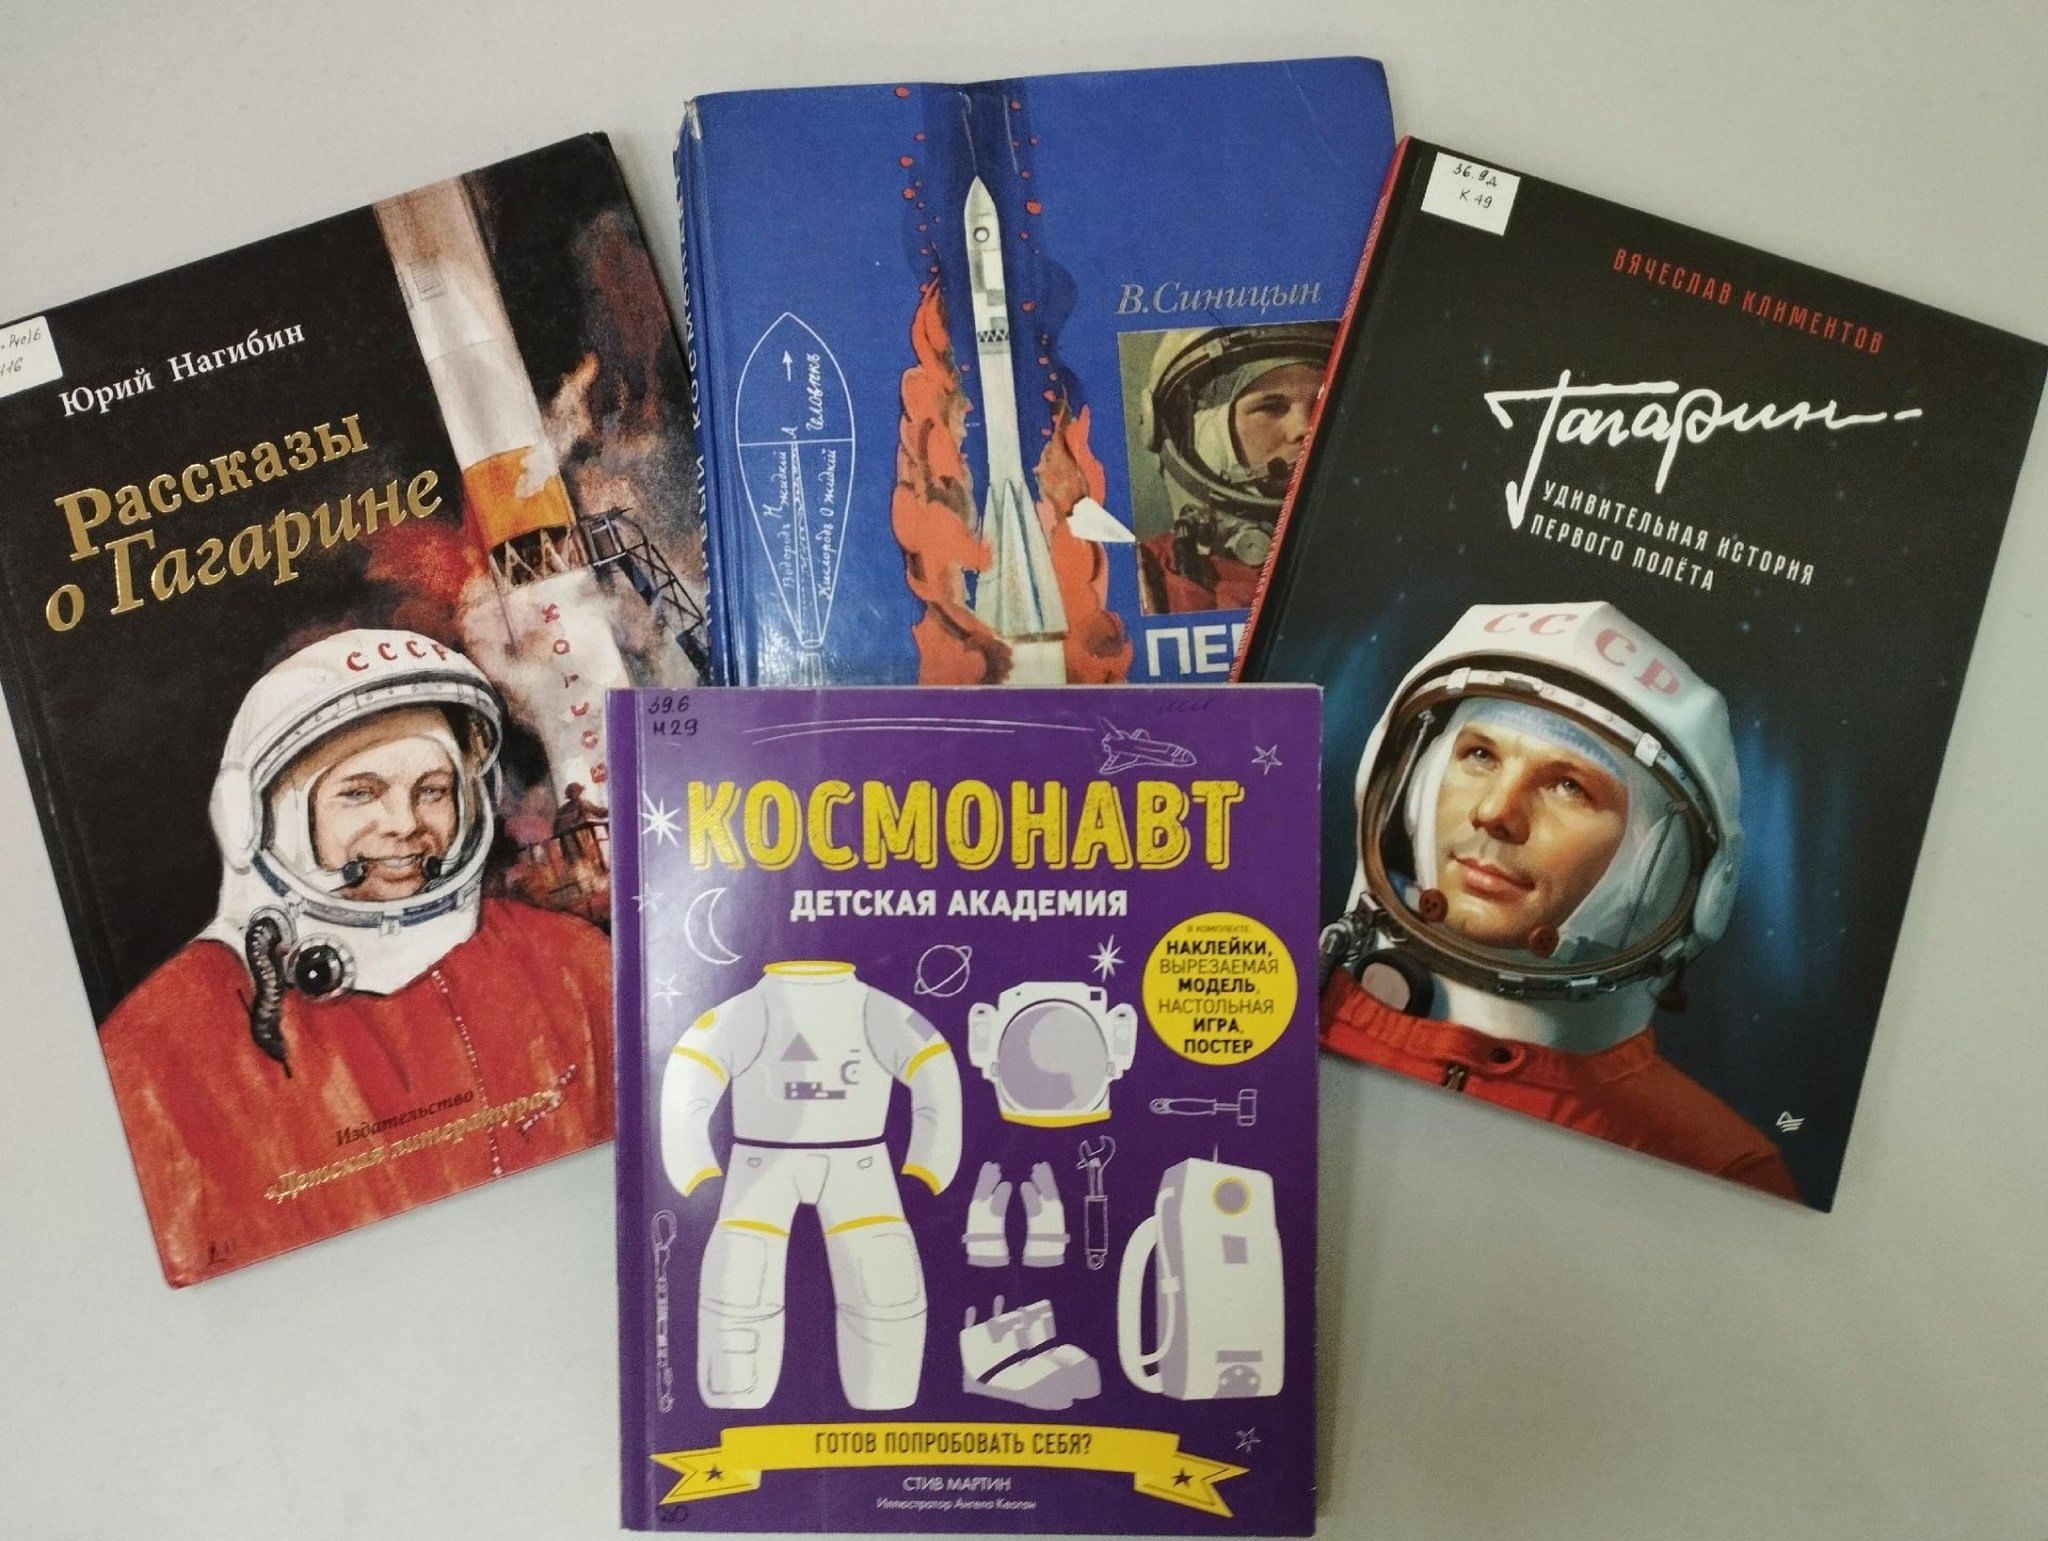 Космонавтика 12 апреля. Как вы стали космонавтом. Как вы стали космонавтом куда то. Как стать космонавтом. Как мальчик стал космонавтом л обухова